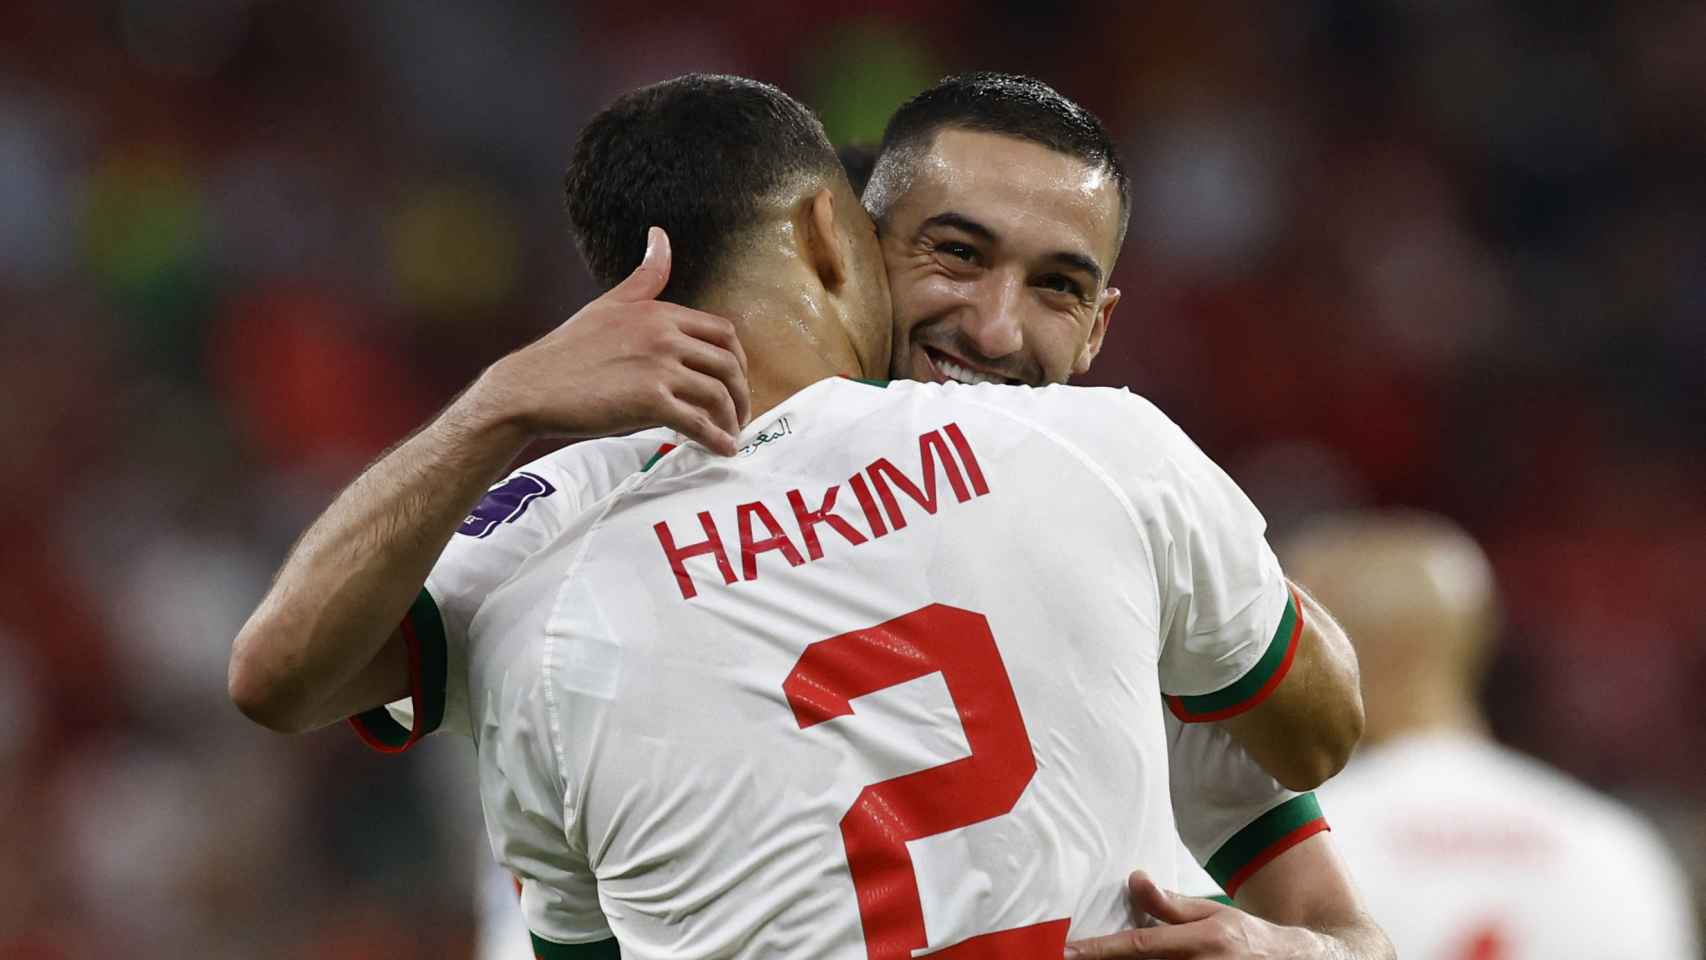 Abrazo entre Achraf Hakimi y Ziyech para celebrar un gol de la selección de Marruecos que fue anulado